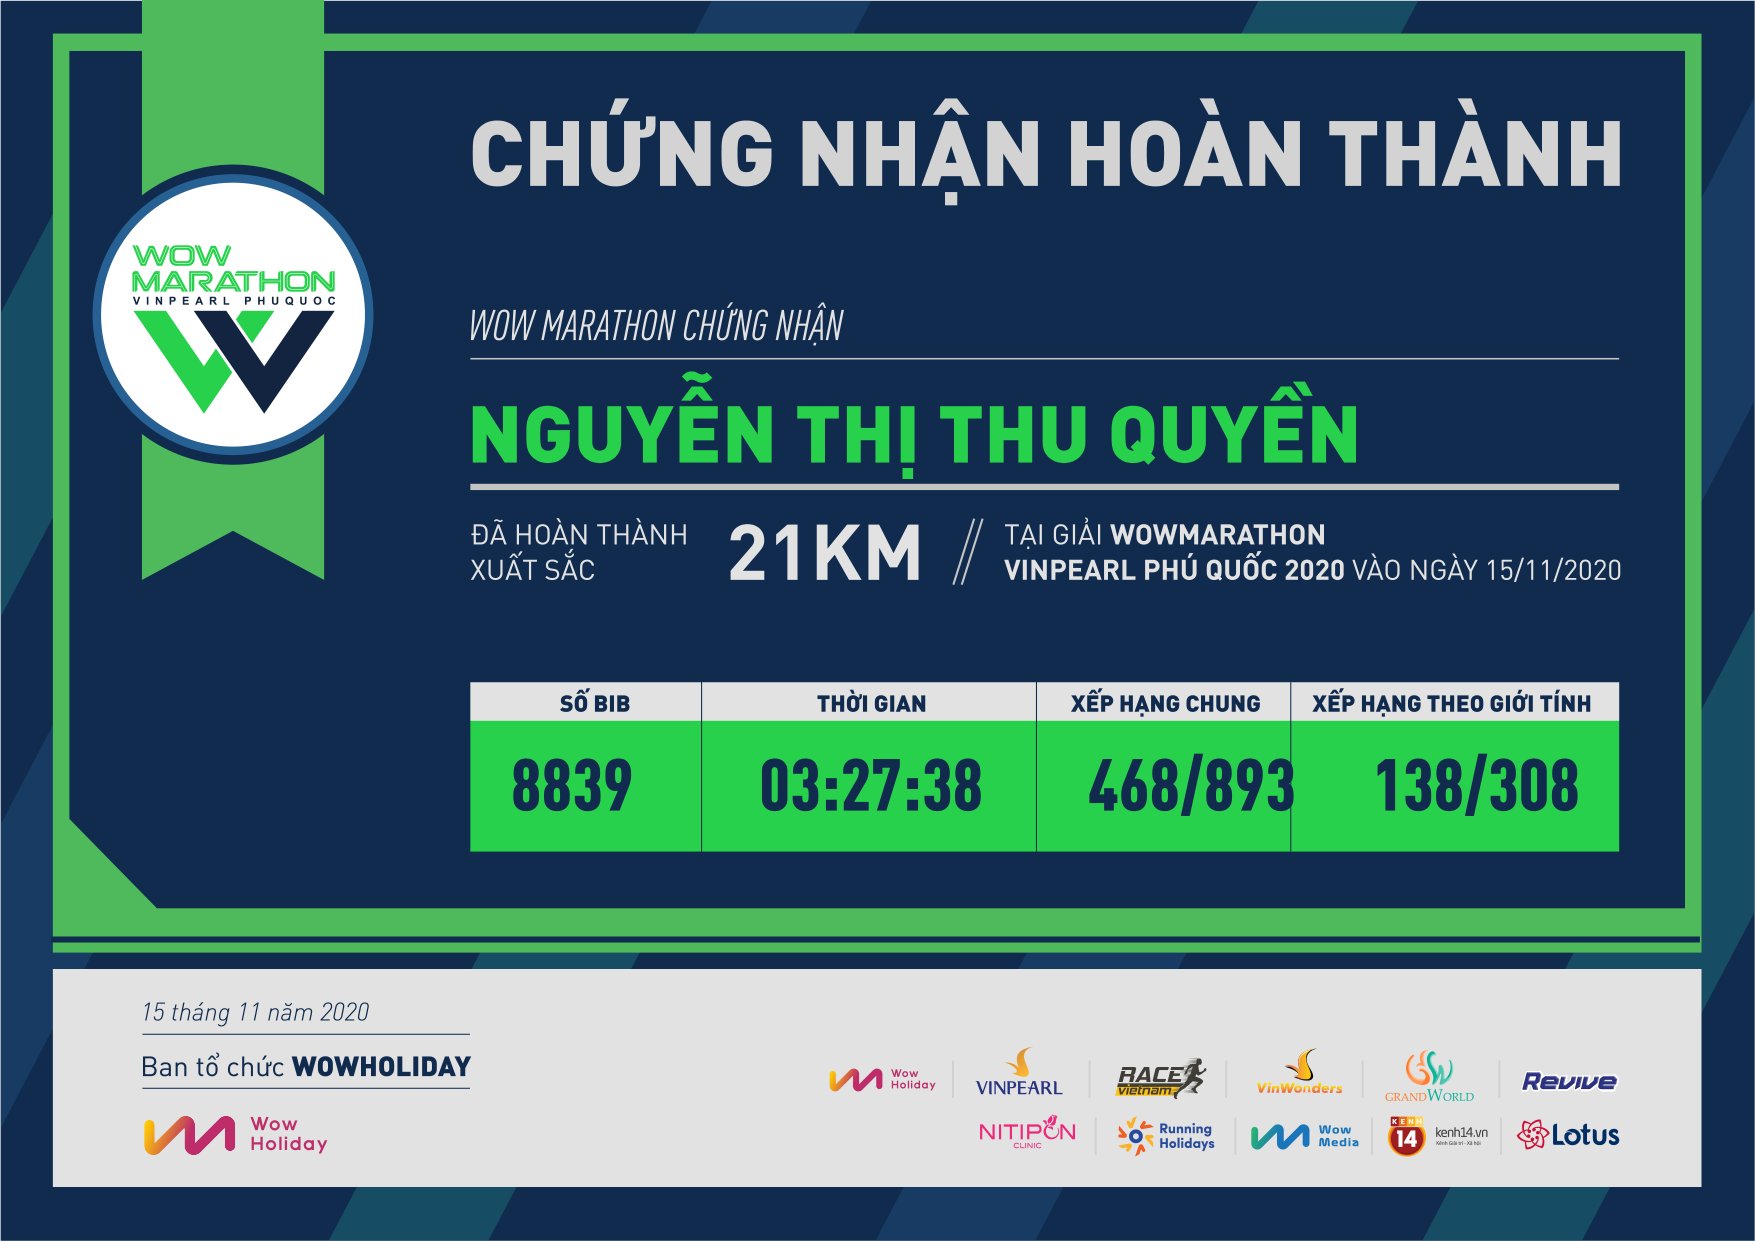 8839 - Nguyễn Thị Thu Quyền